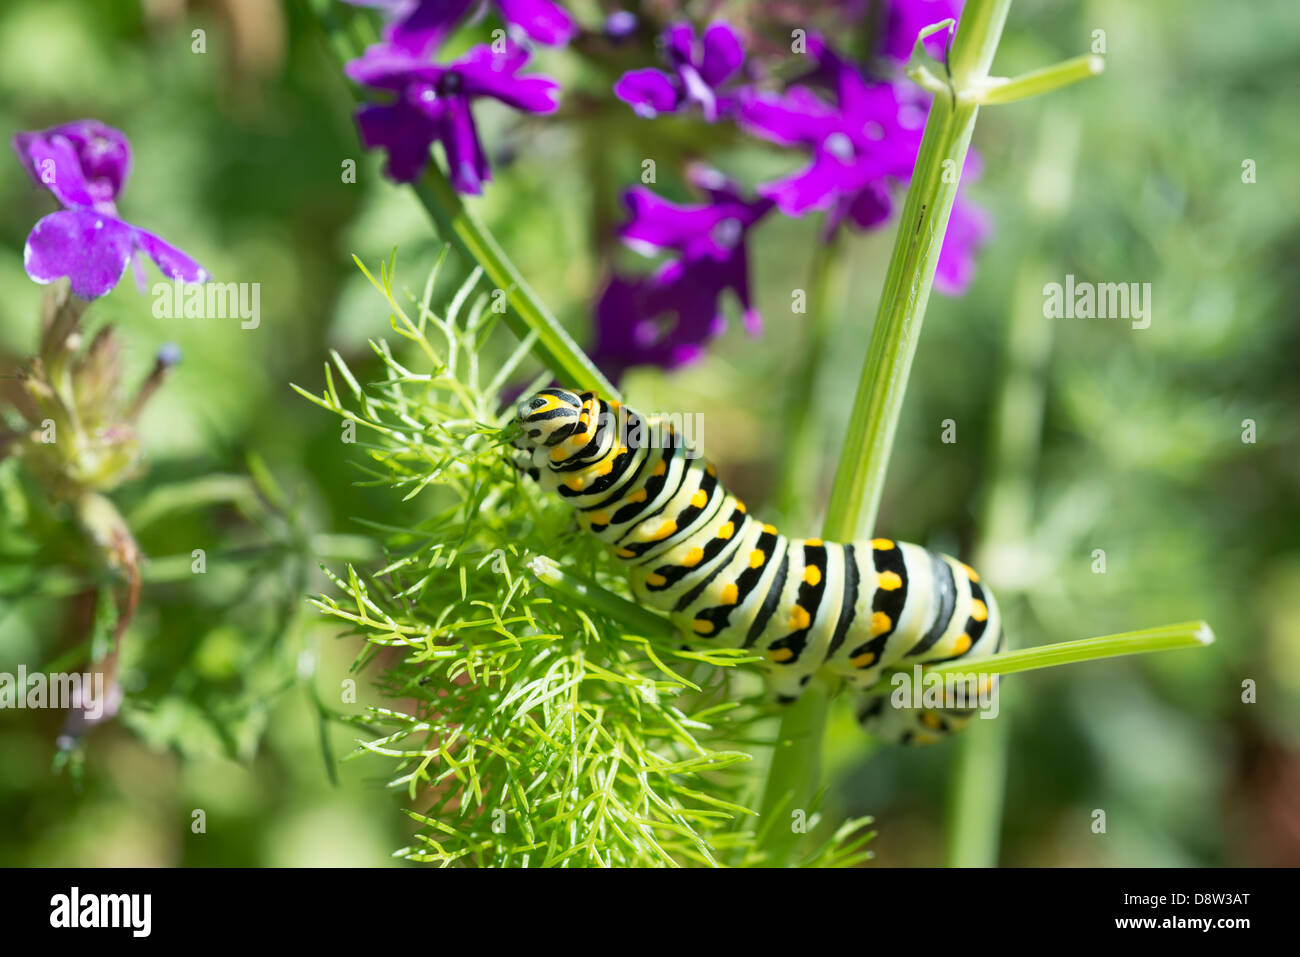 Nero a coda di rondine di alimentazione caterpillar il finocchio in giardino con fiori viola. Foto Stock